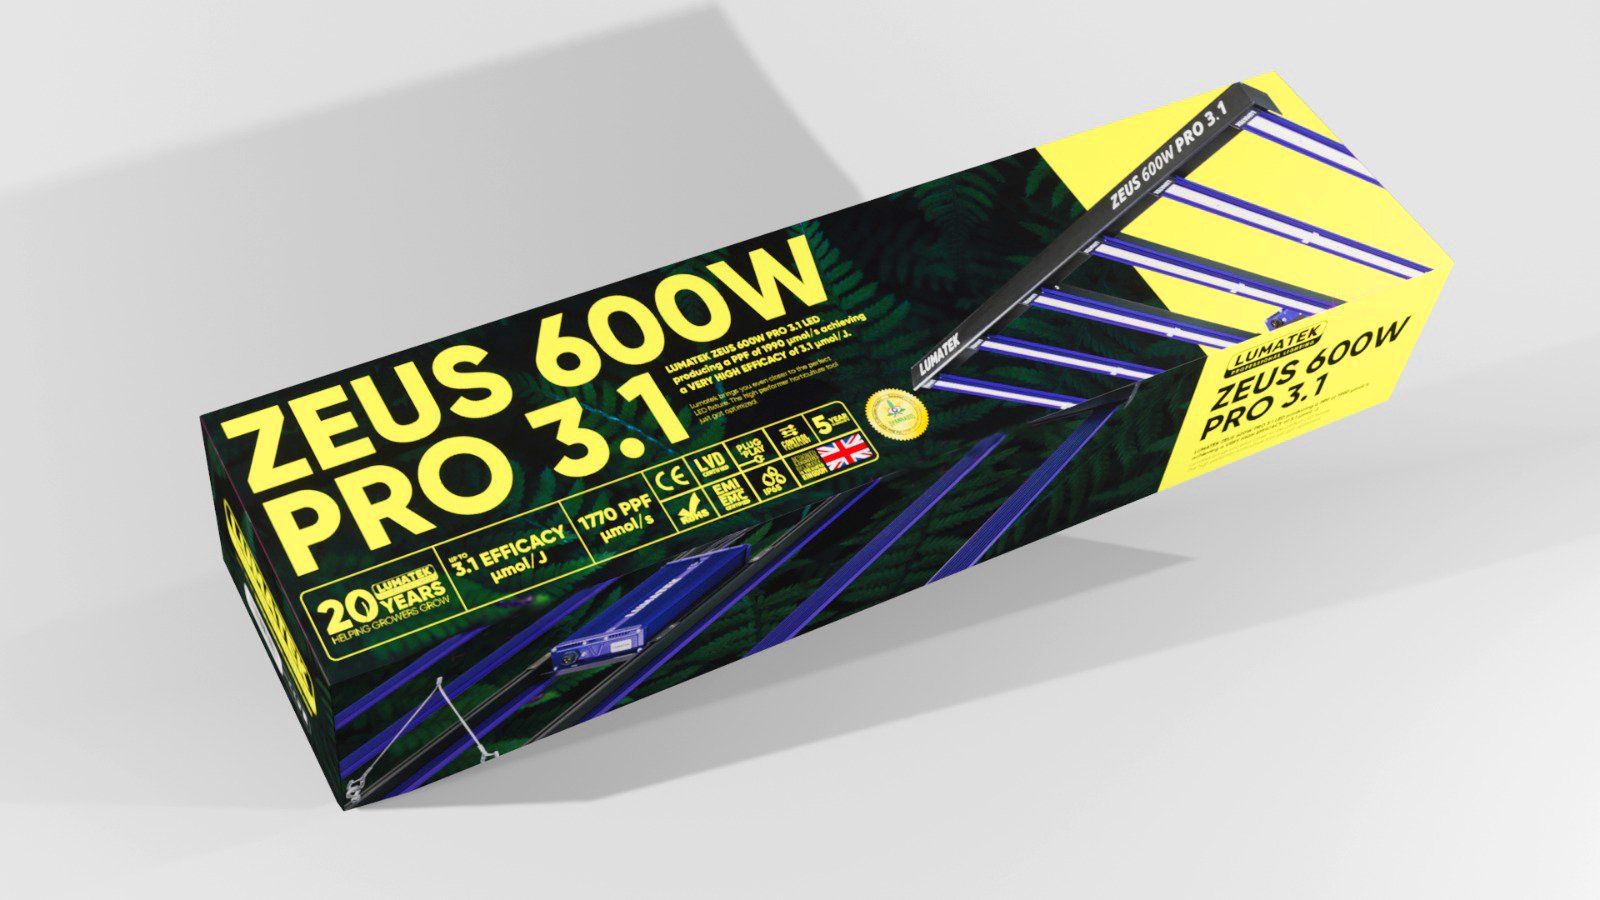 ZEUS-600W-PRO-31-Packaging